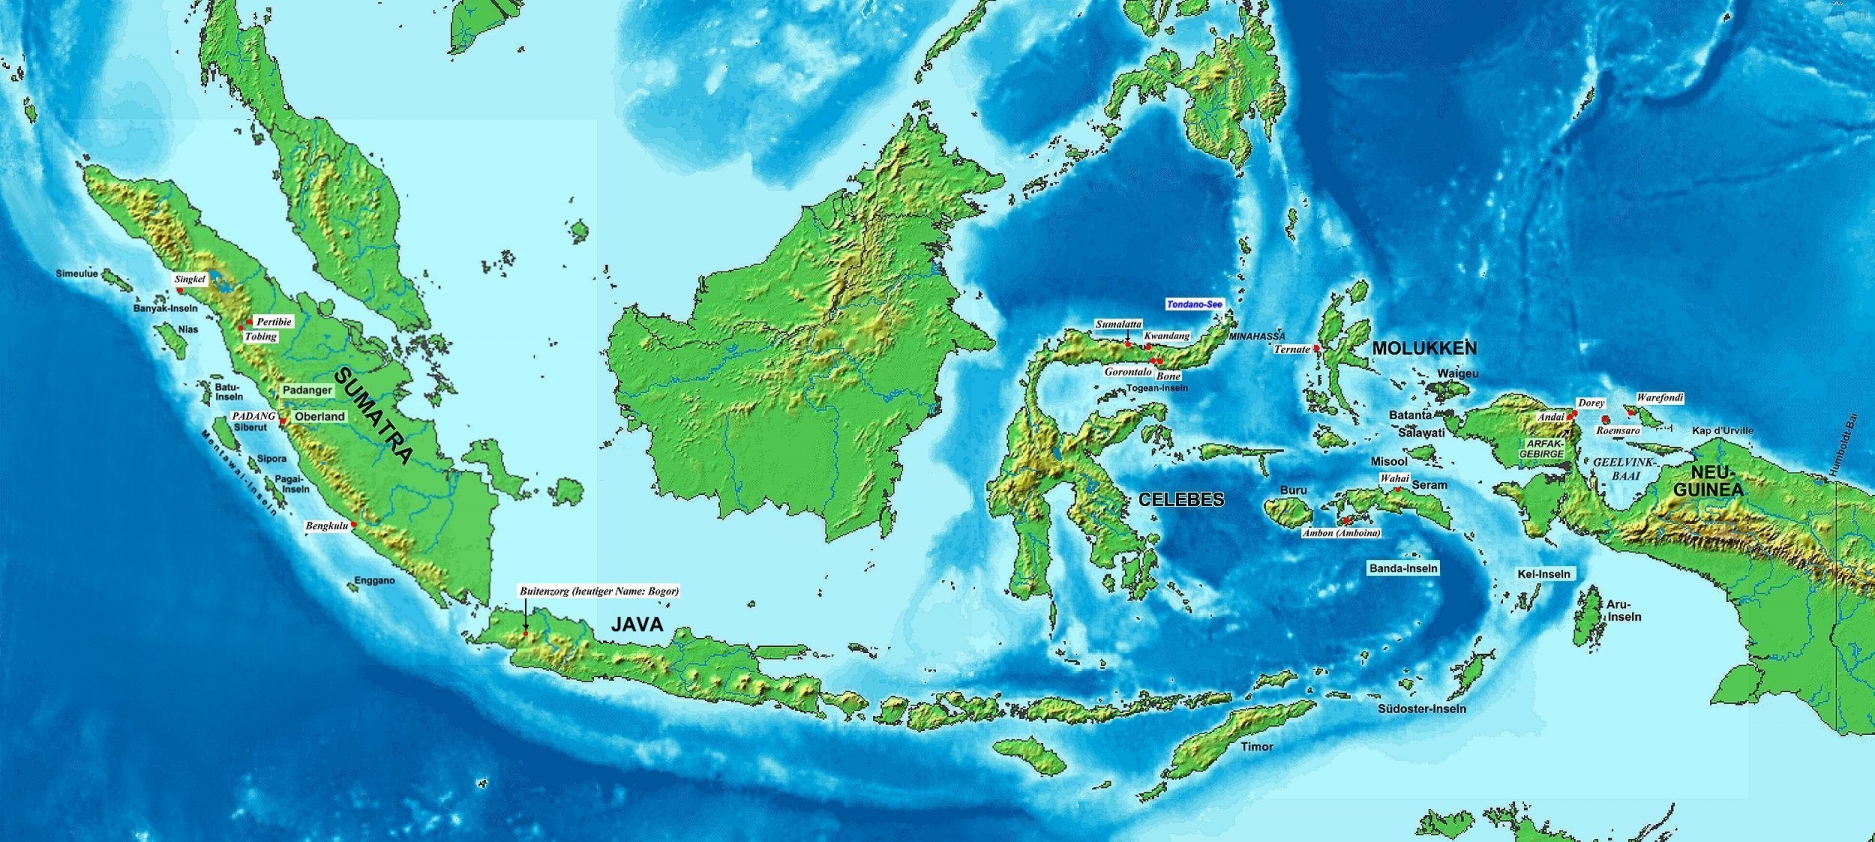 印度尼西亚,是一个人口超过2.